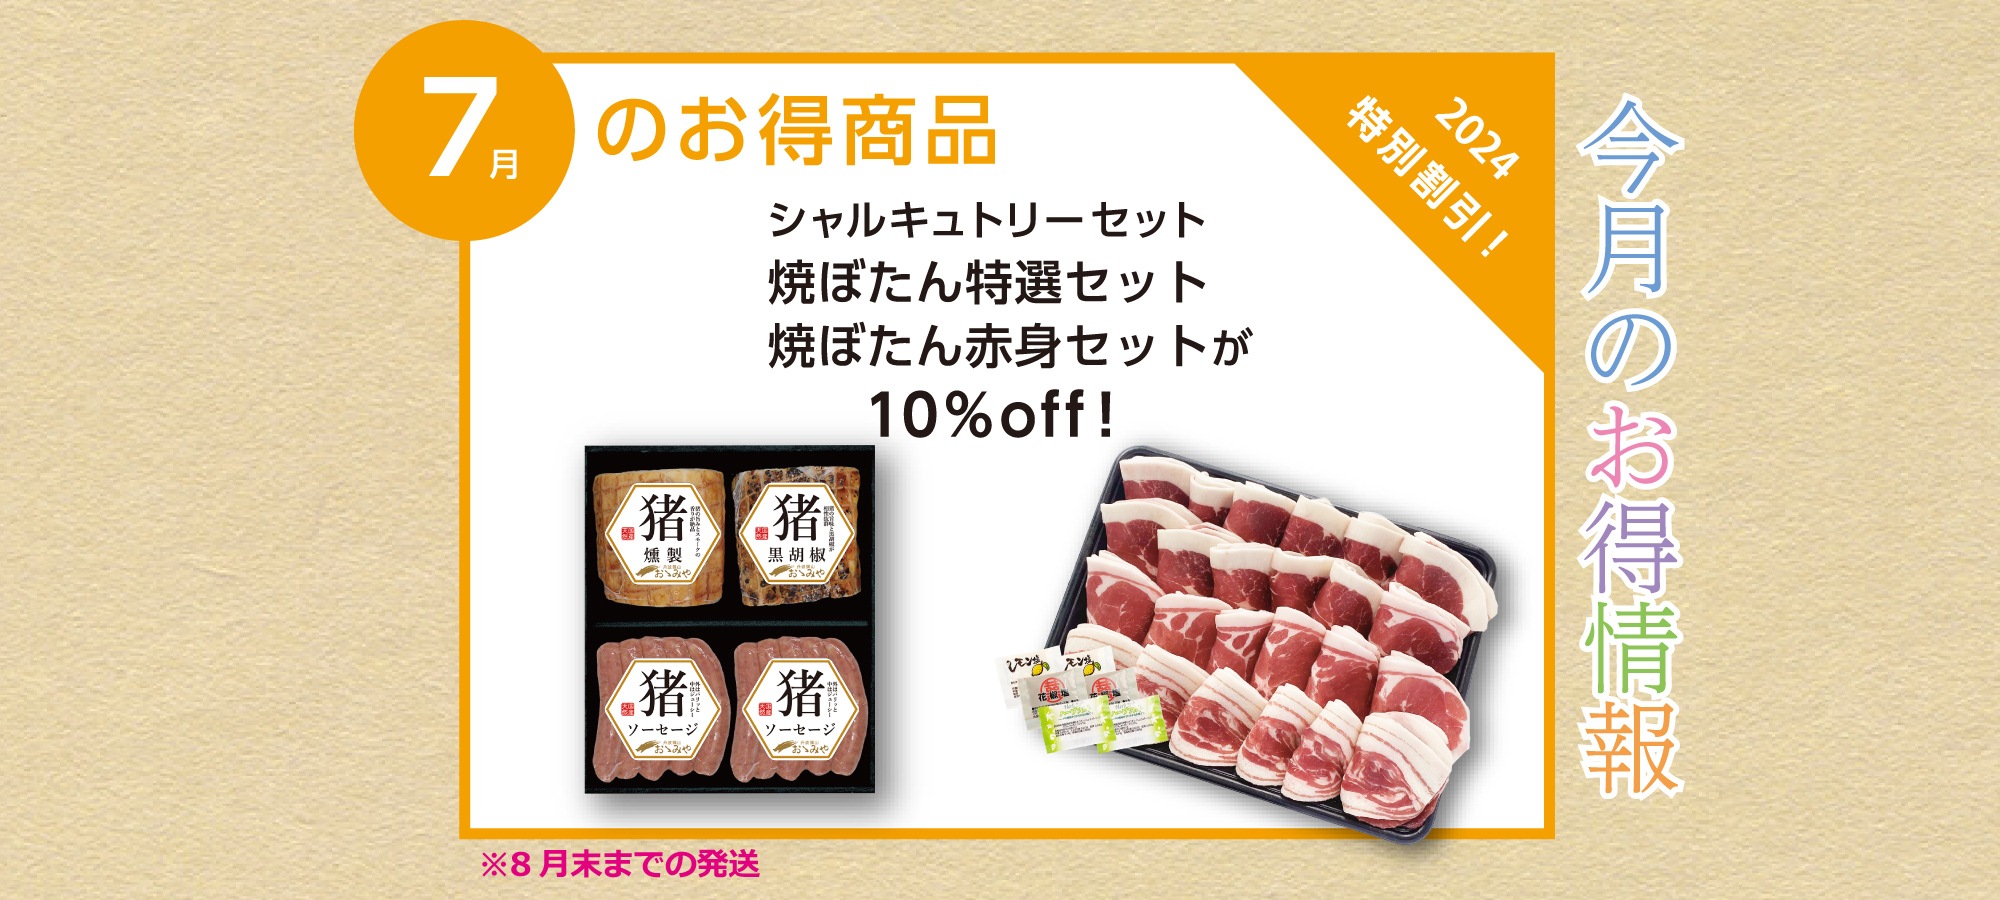 しし肉専門店 丹波篠山おゝみや 国産天然猪肉 ぼたん鍋 ジビエの